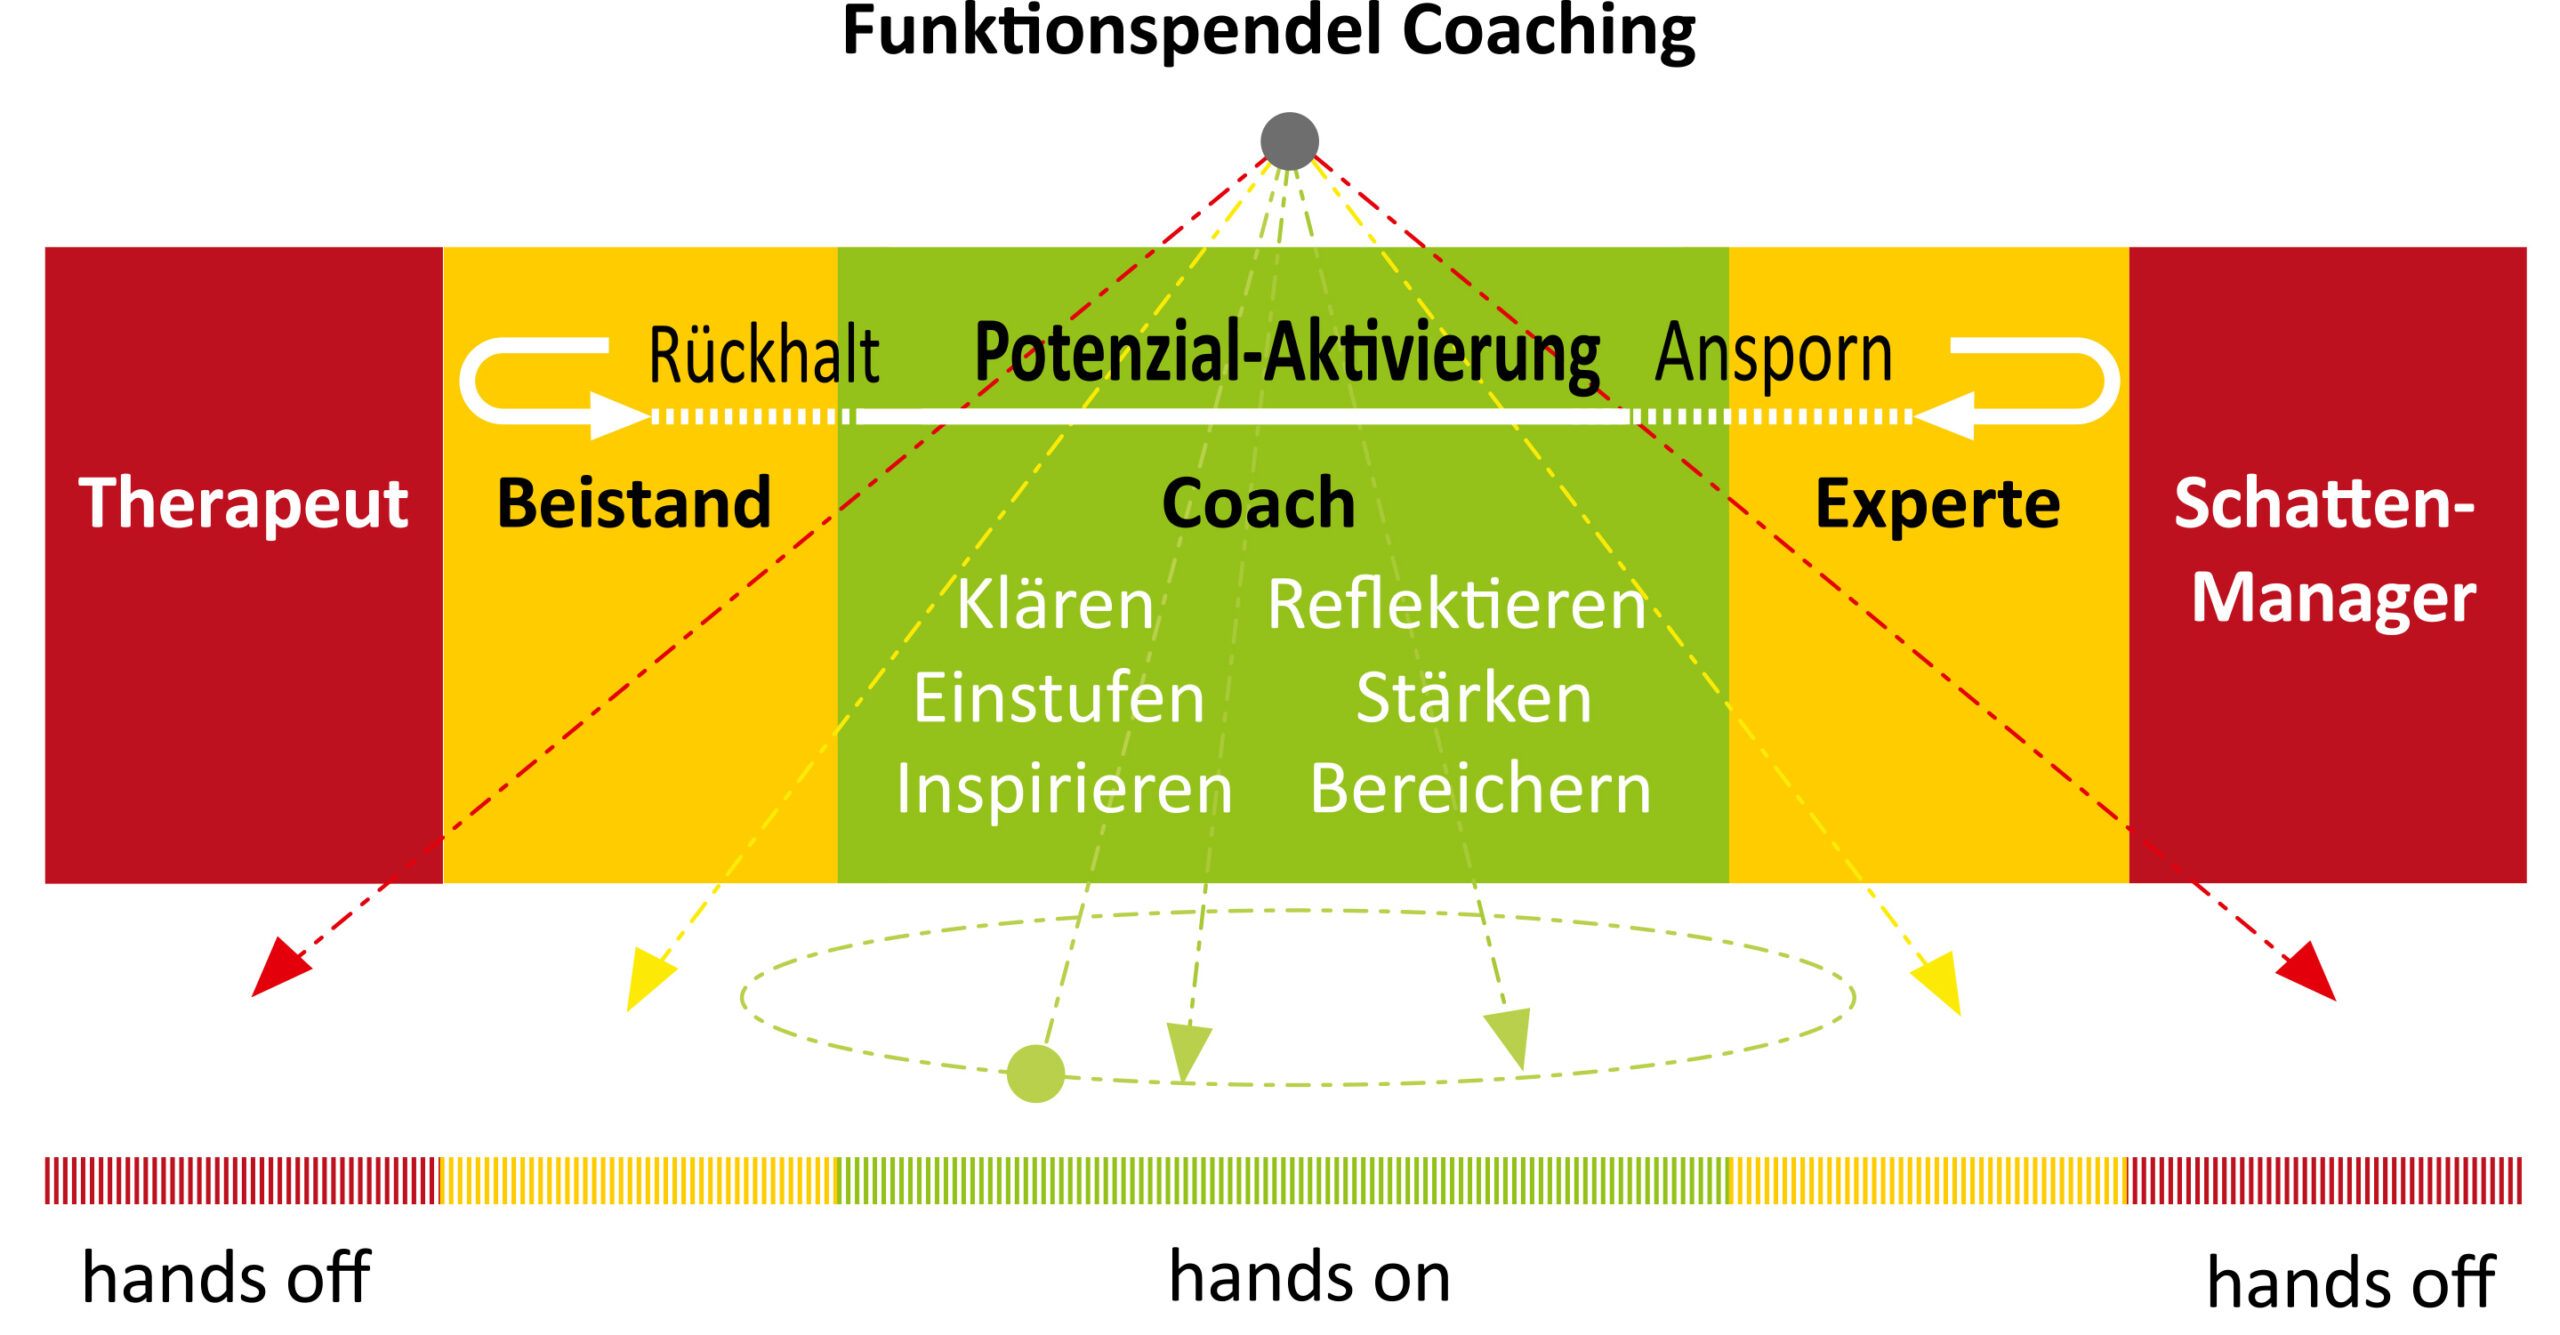 Das "Funktionspendel Coaching" aus Kapitel 1.3 des DBCV Coaching-Kompendiums. Mit freundlicher Genehmigung von Frau Dr. Ulrike Wolff (www.dwmb.com). Man sieht in der Mitte der Grafik einen grünen Bereich, in dem der Coach und seine Aufgabenfelder beschrieben sind: Potenzial-Aktivierung, Klären, Einstufen, Inspirieren, Reflektieren, Stärken, Bereichern. 
Links und rechts vom grünen Bereich gibt es gelbe und rote Bereiche mit Rollen, die der Coach in einem Coaching nur selektiv/temporär einnehmen (gelb) oder möglichst ganz vermeiden (rot) sollte. 
Gelb links: Beistand.
Rot links: Therapeut. 
Gelb rechts: Experte. 
Rot rechts: Schatten-Manager. 

Darüber ist ein Pendel angedeutet, das den Bereich darstellt, in dem ein Coach sich bewegen sollte (hands on) und wo er besser die Finger davon lässt (hands off). 